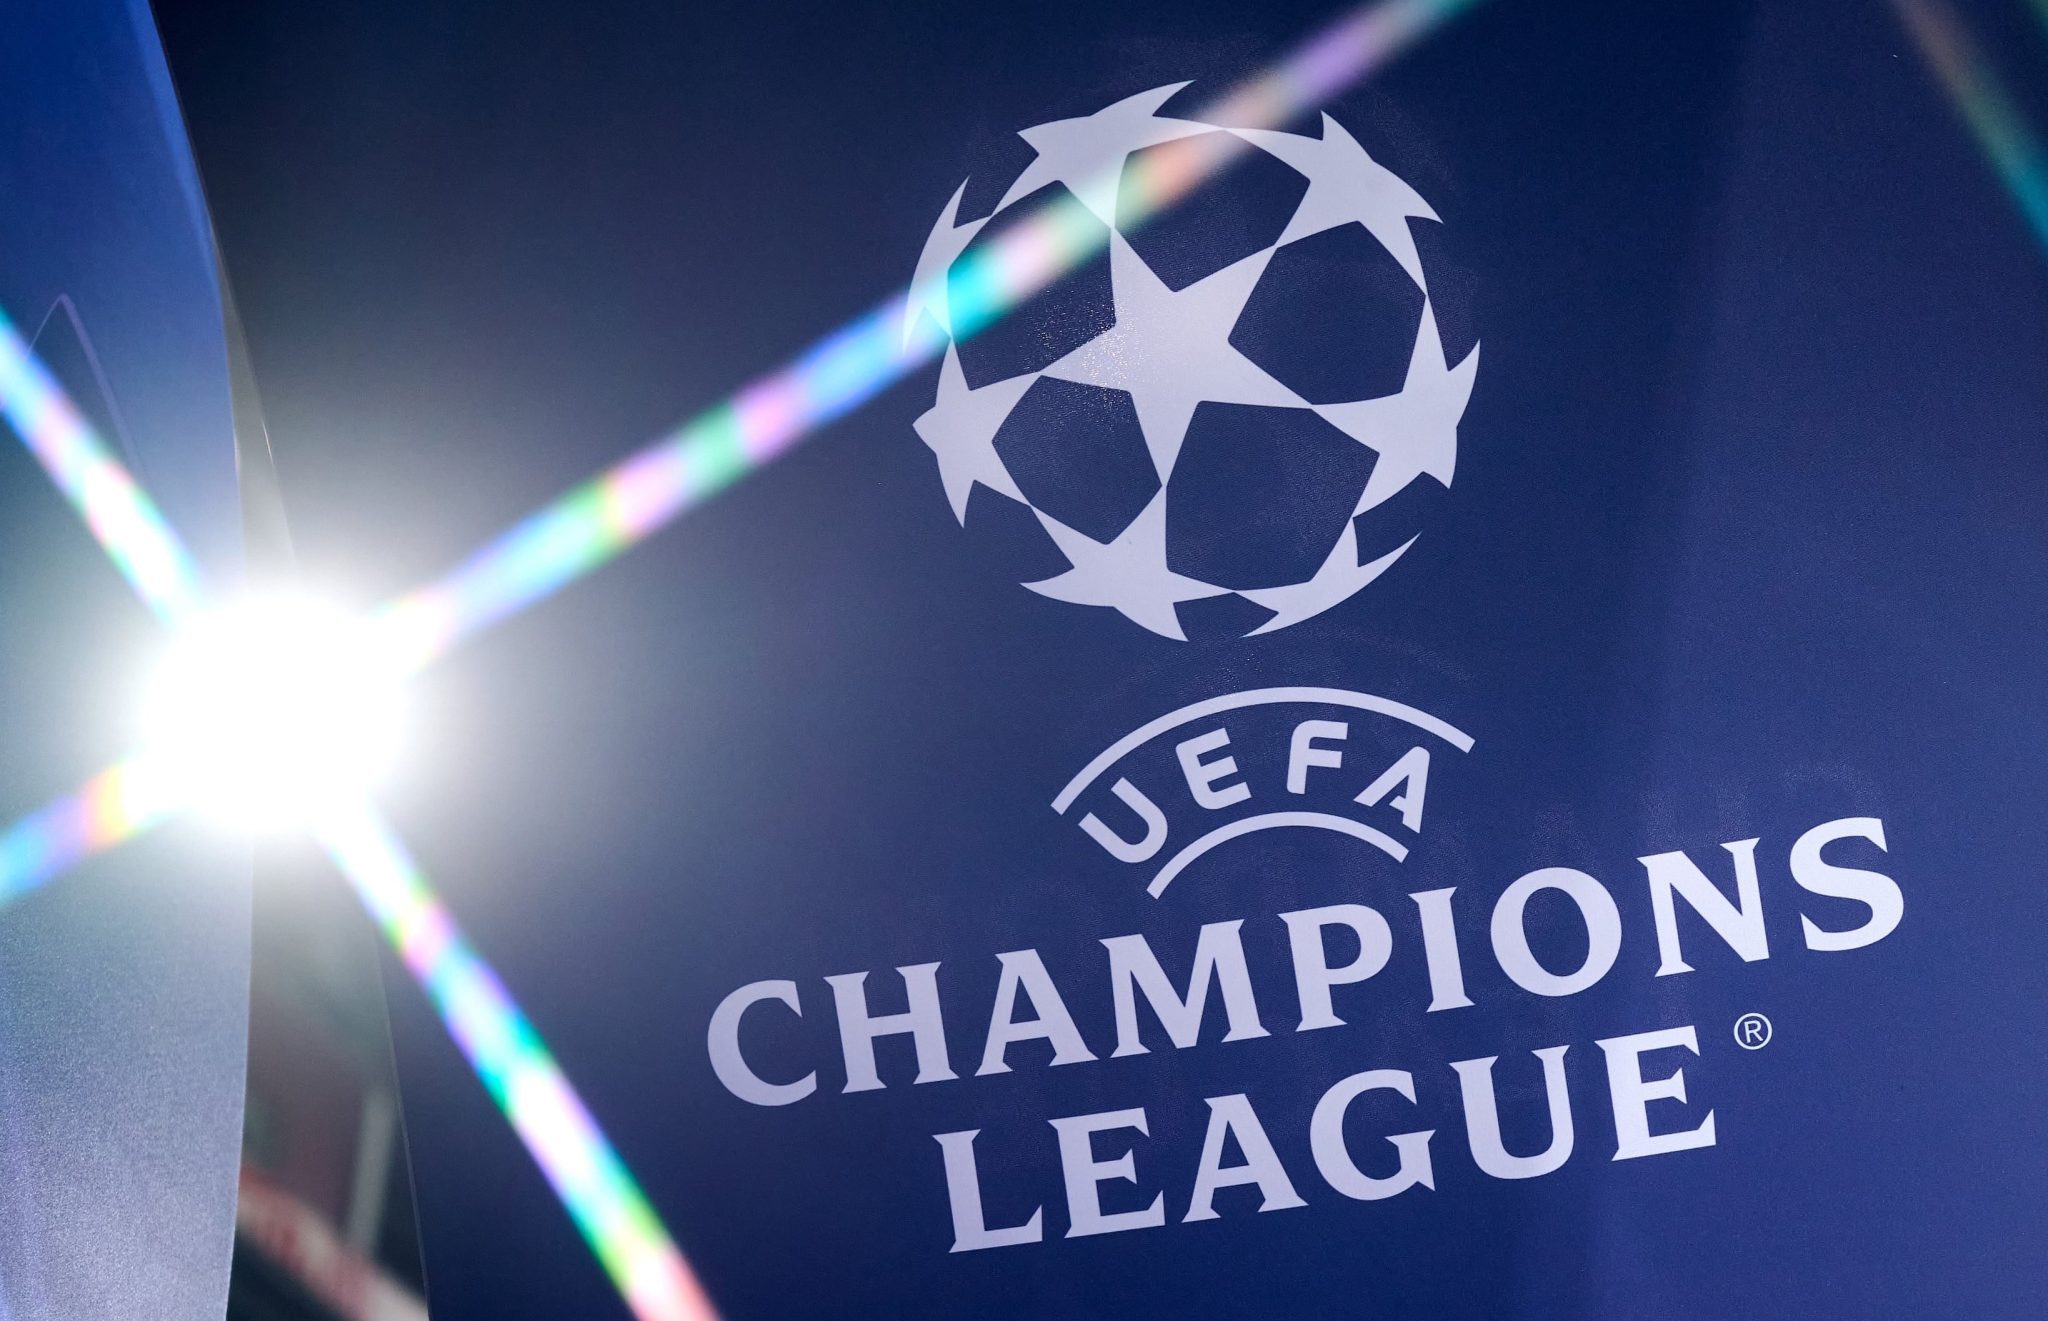 ¡Partidazos! La Champions League regresa con grandes encuentros